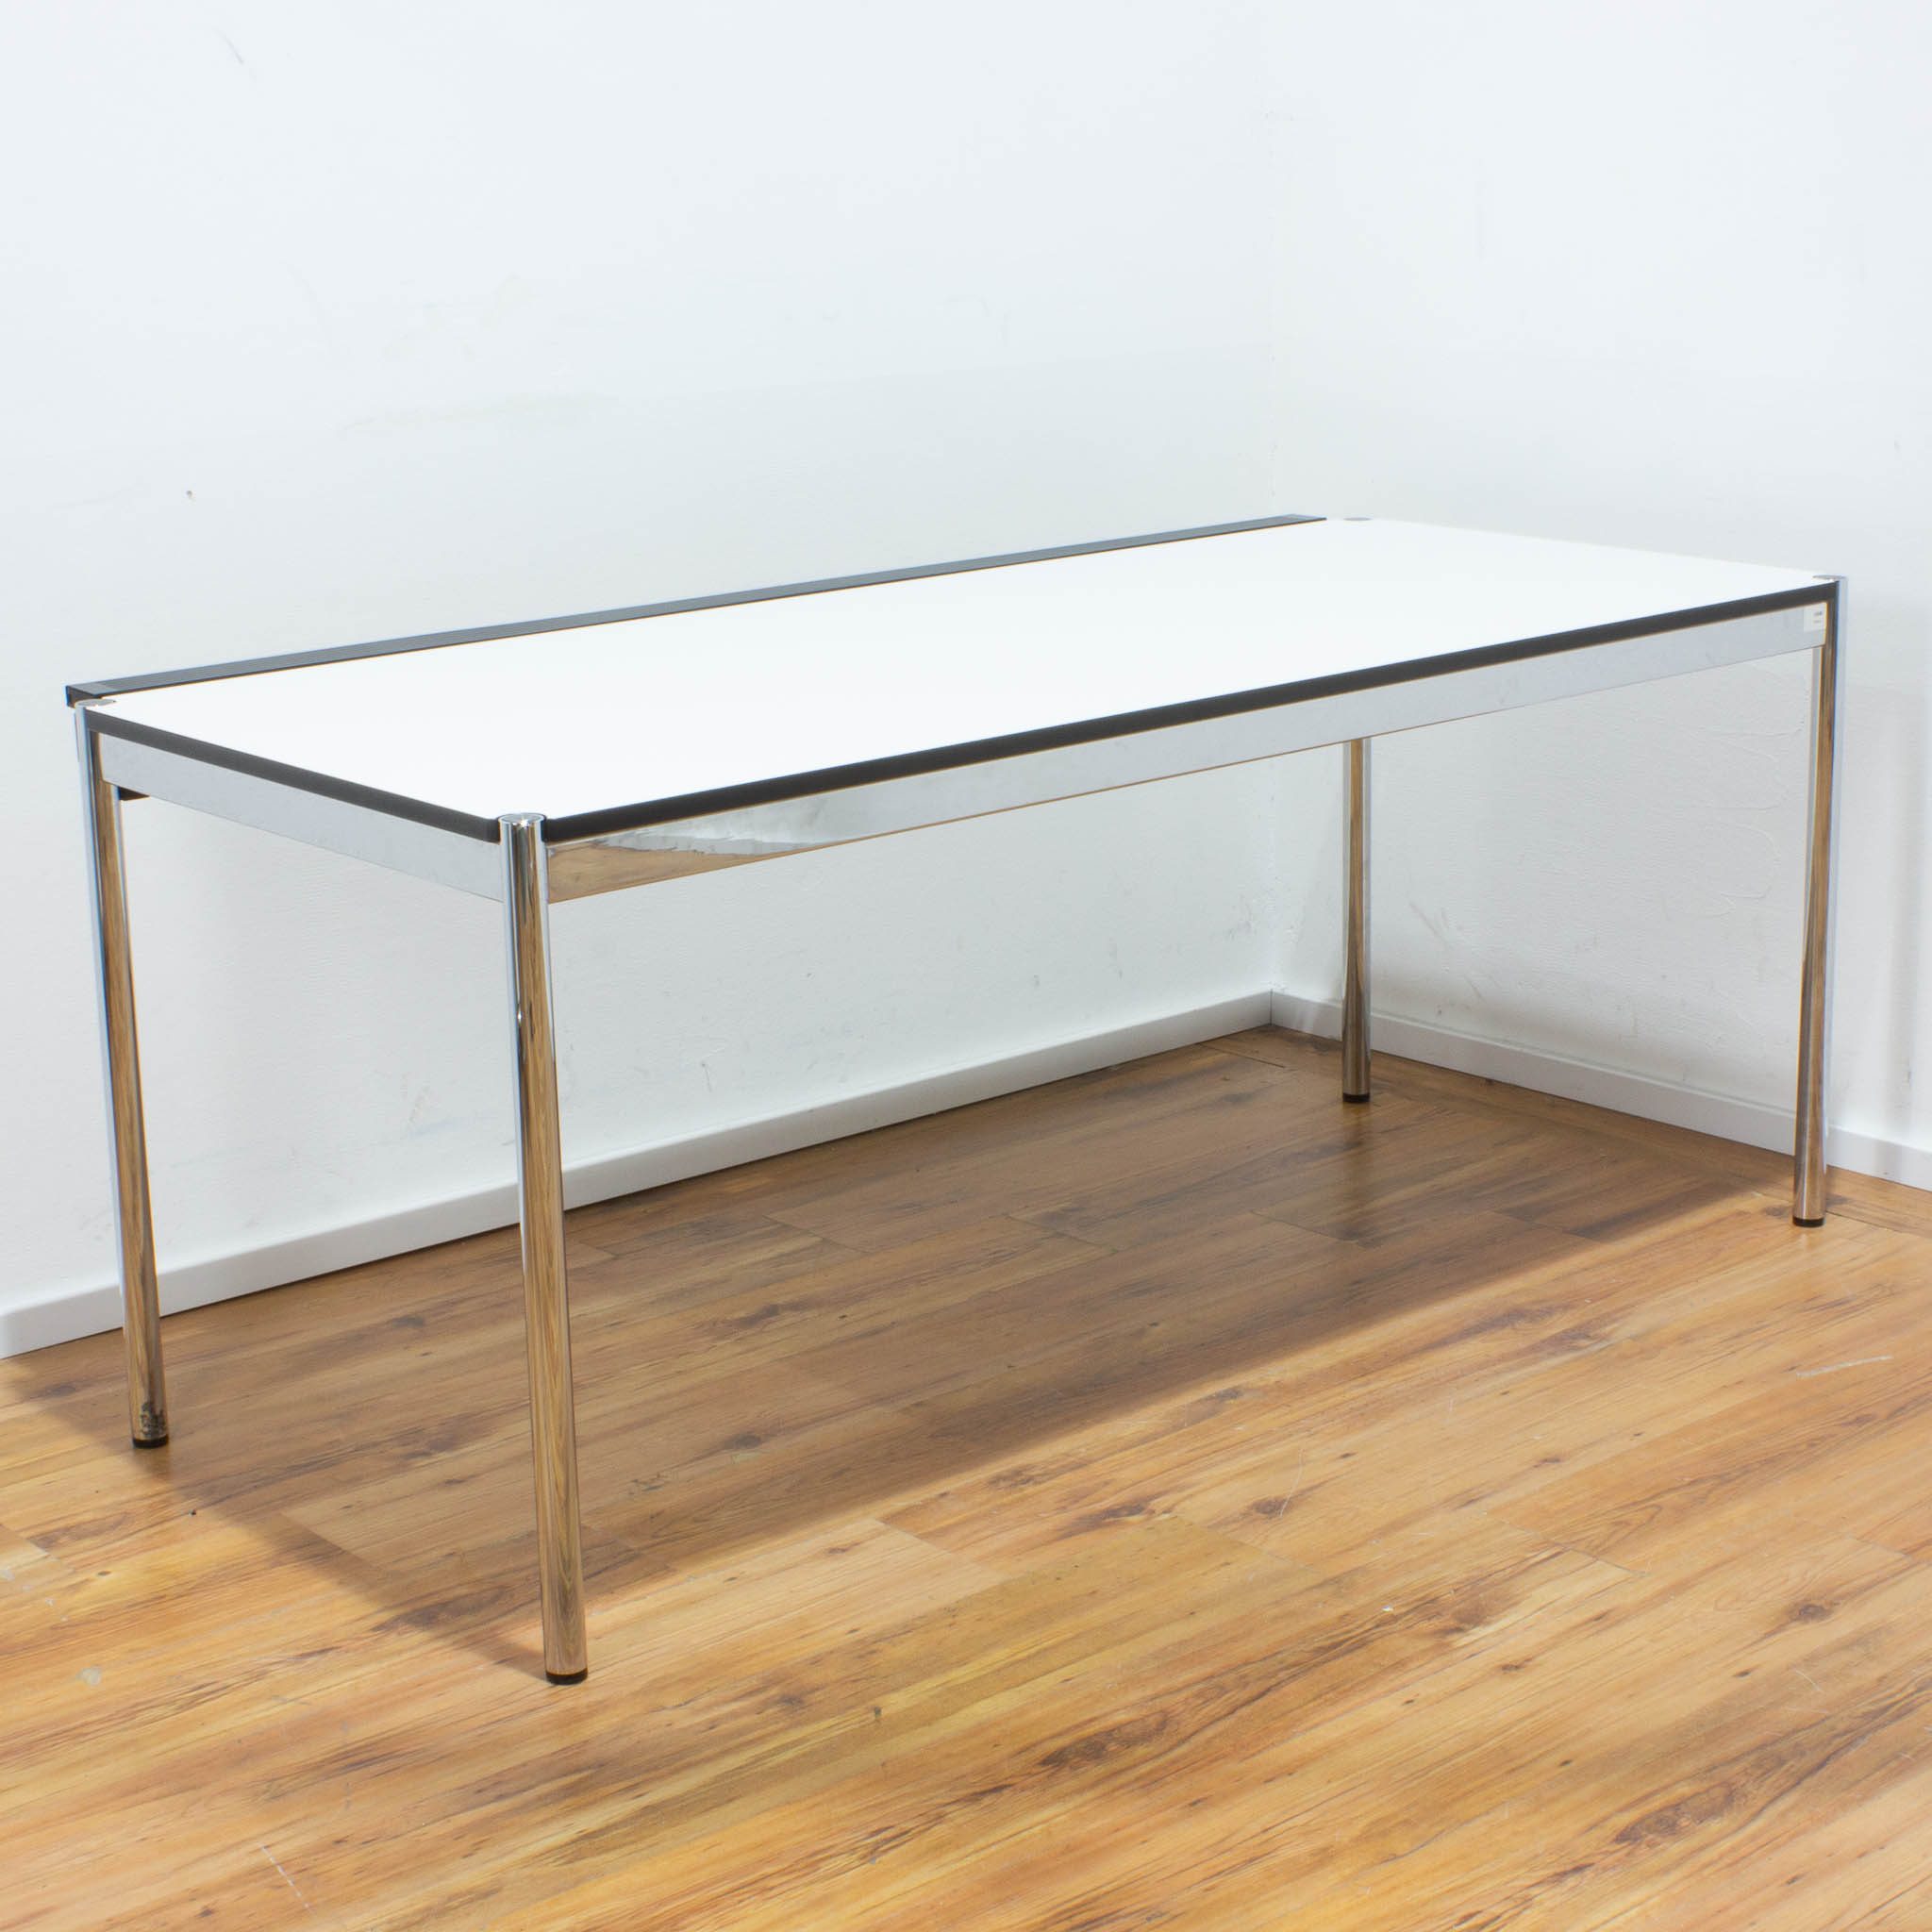 USM Haller Schreibtisch - Tischplatte weiß mit Kabalkanal an der Seite - gebraucht - 175 x 75 cm 